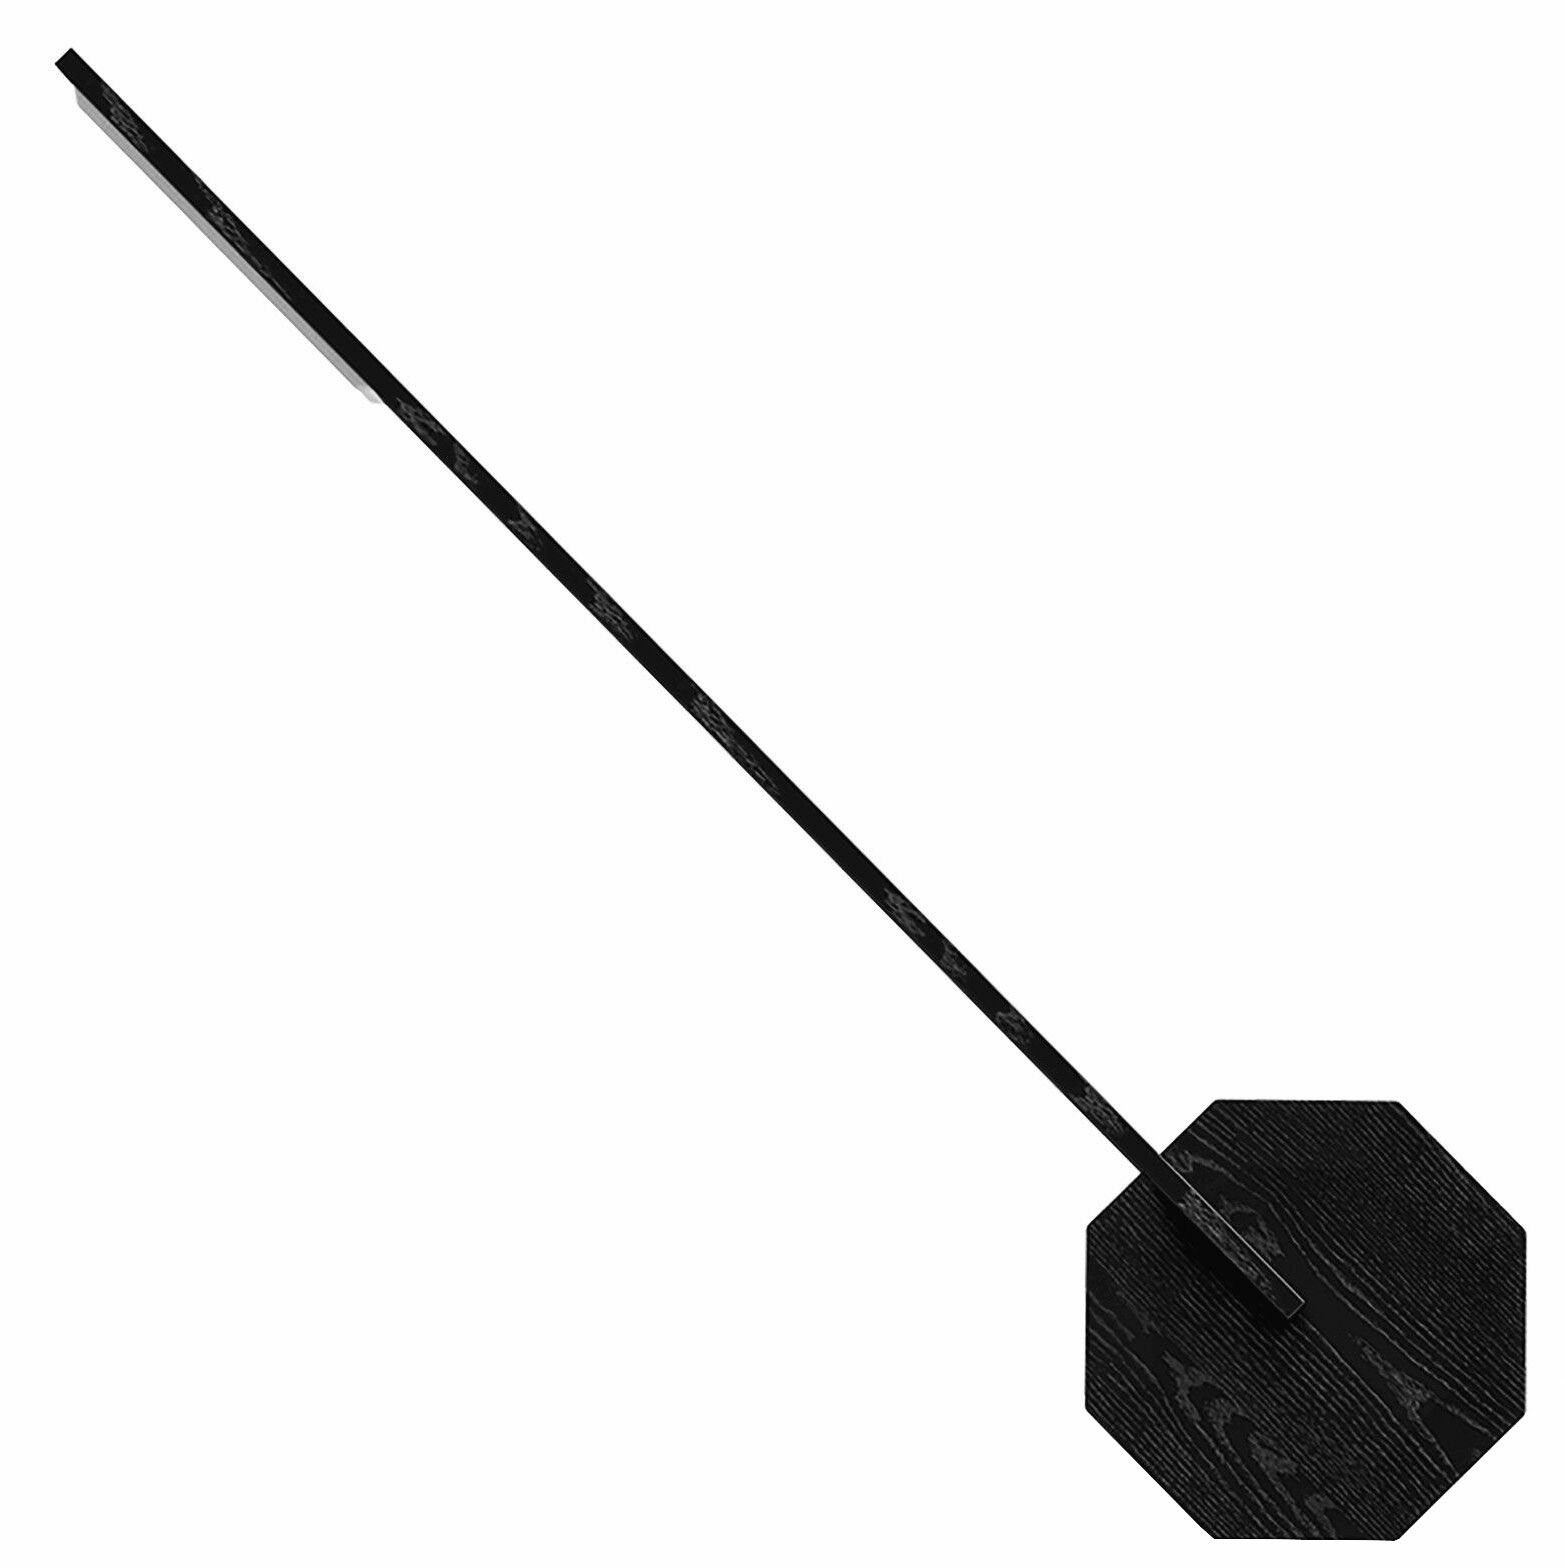 Kabellose LED-Schreibtischlampe "Octagon One", schwarze Version von Gingko